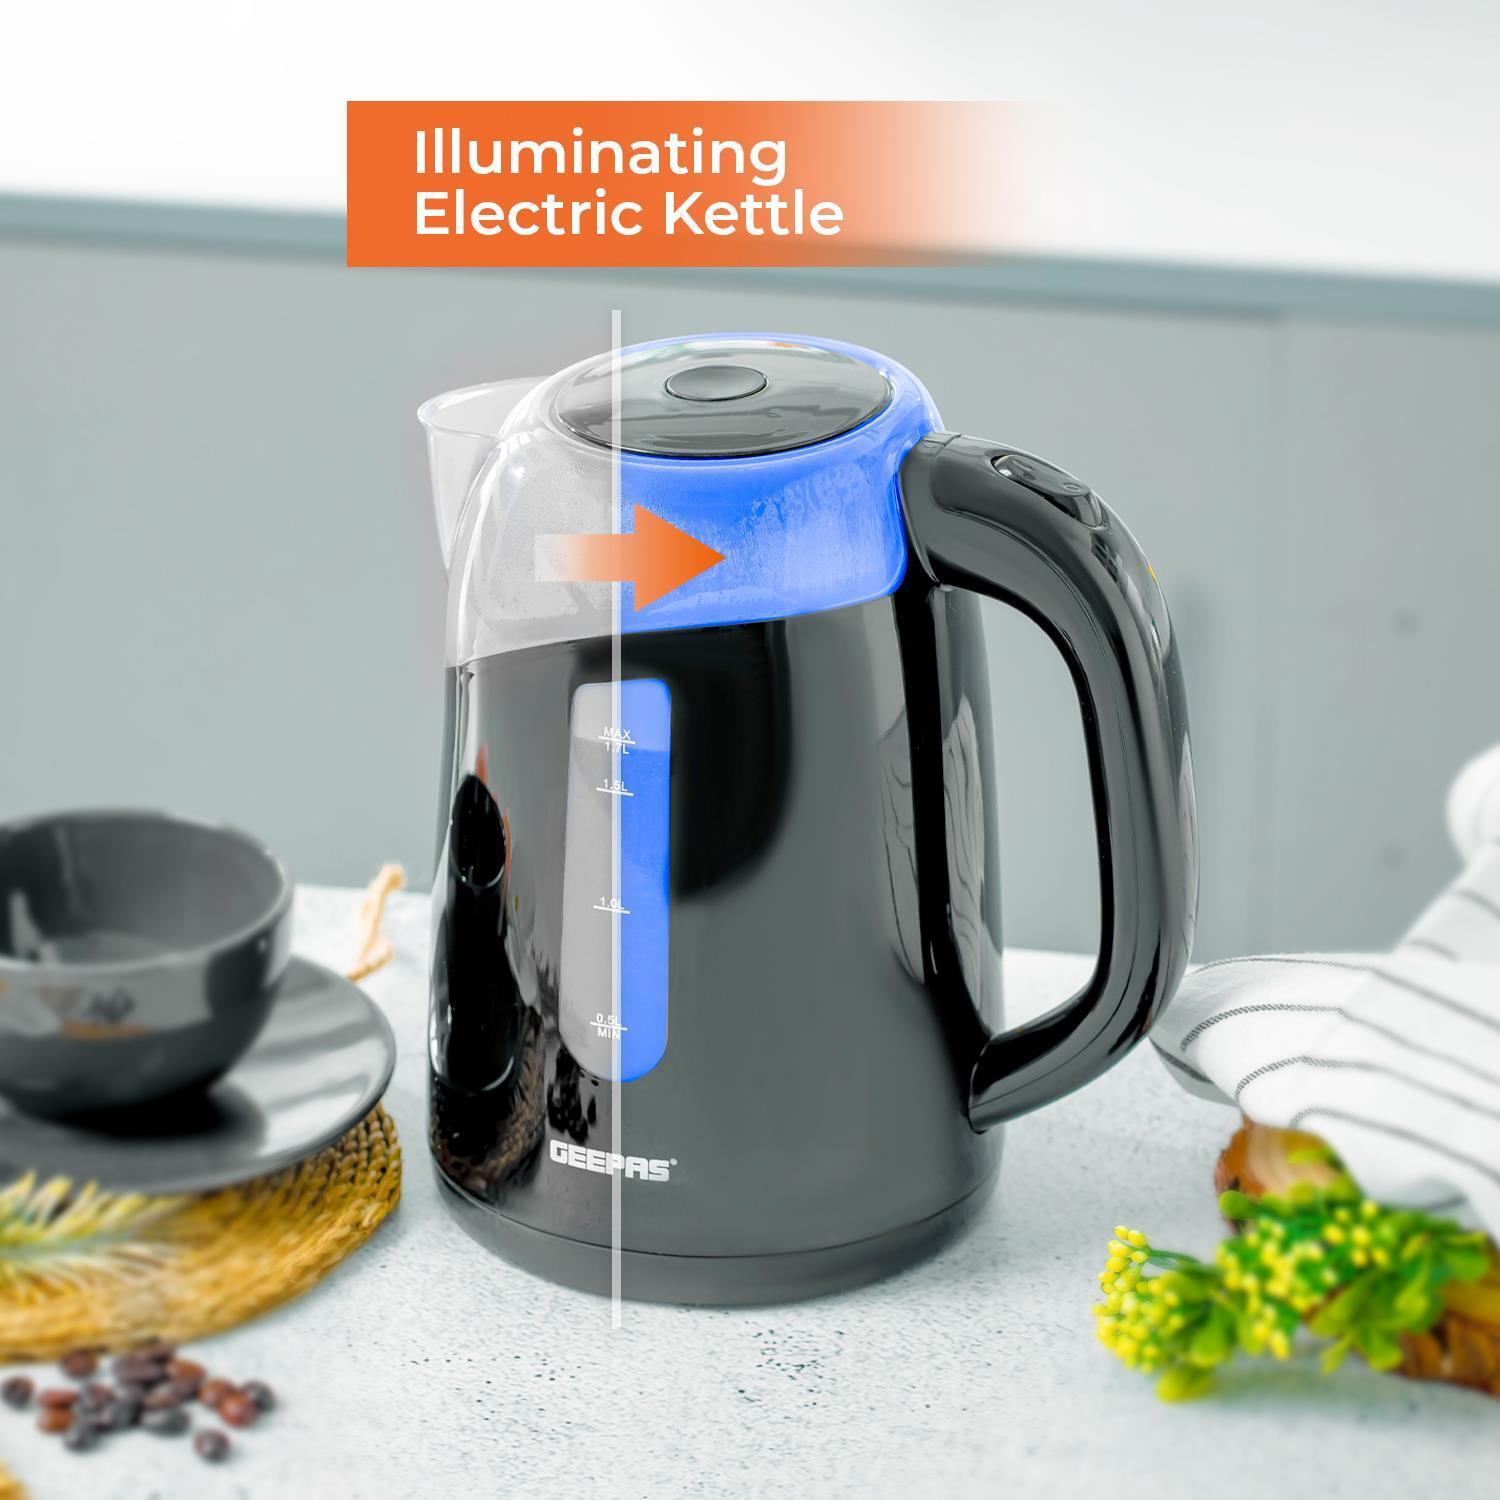 2 Slice Toaster & Illuminating LED Electric Kettle Set